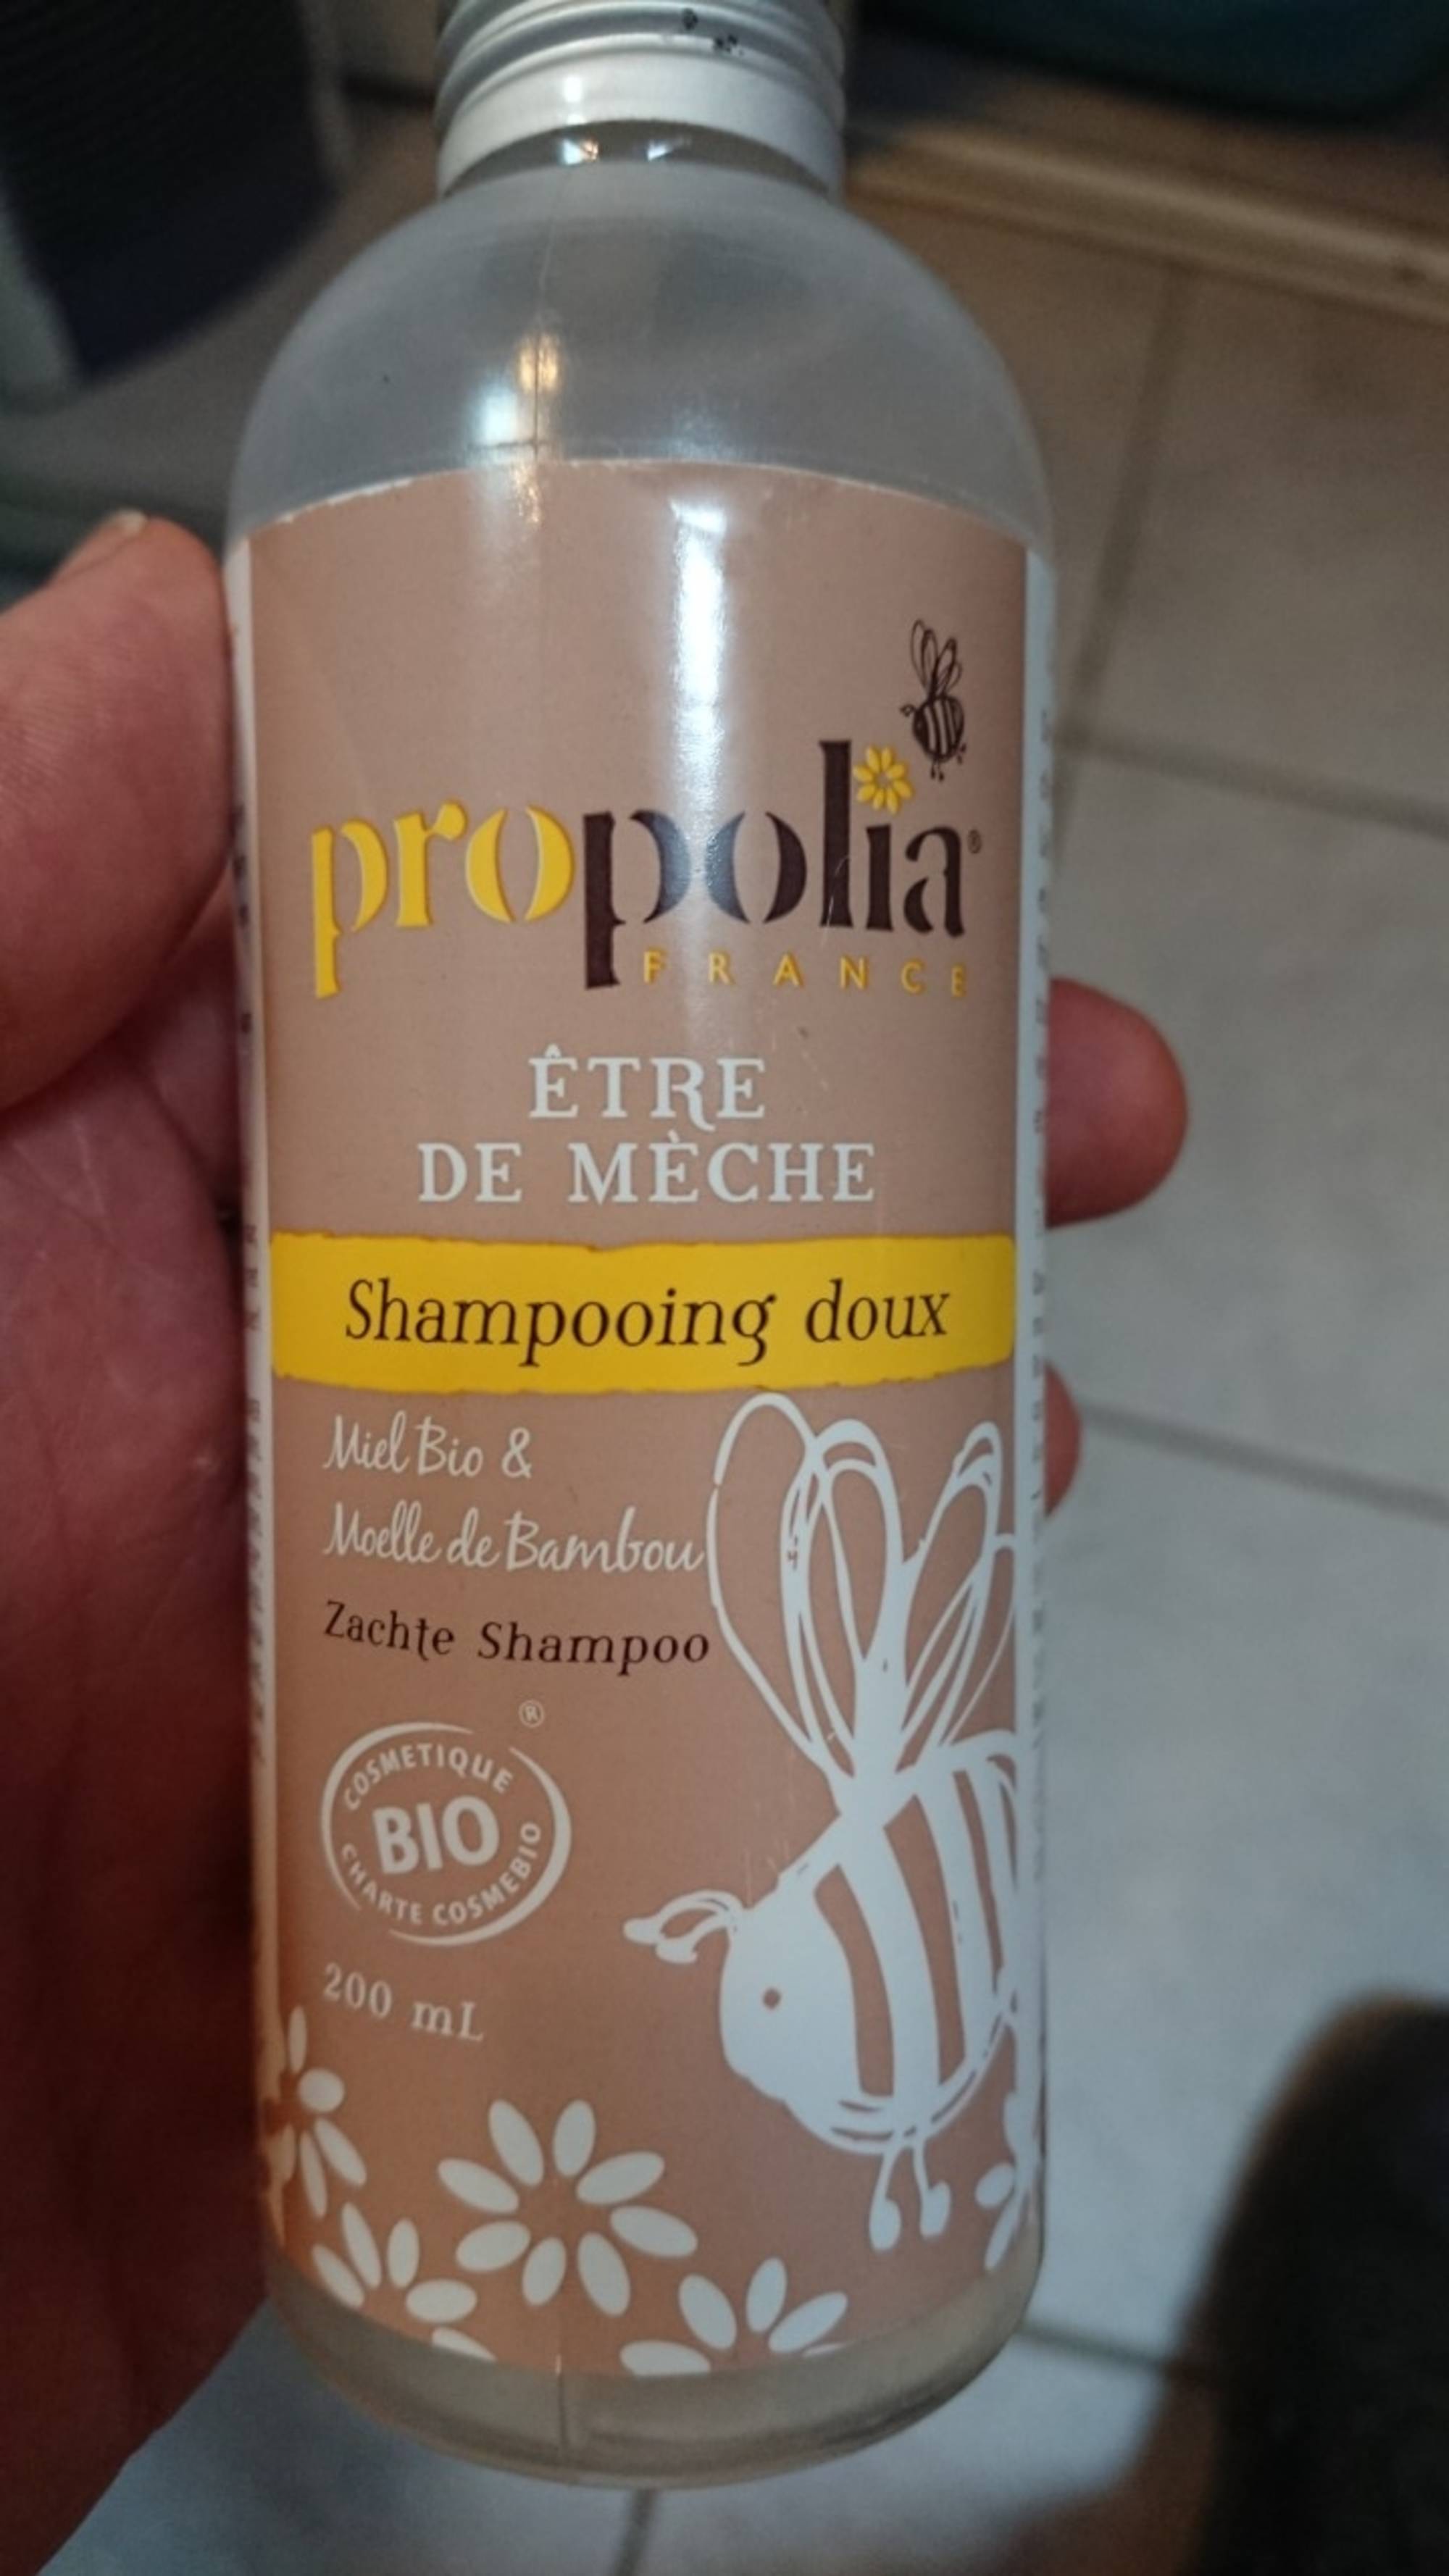 PROPOLIA - Être de mèche - Shampooing doux bio